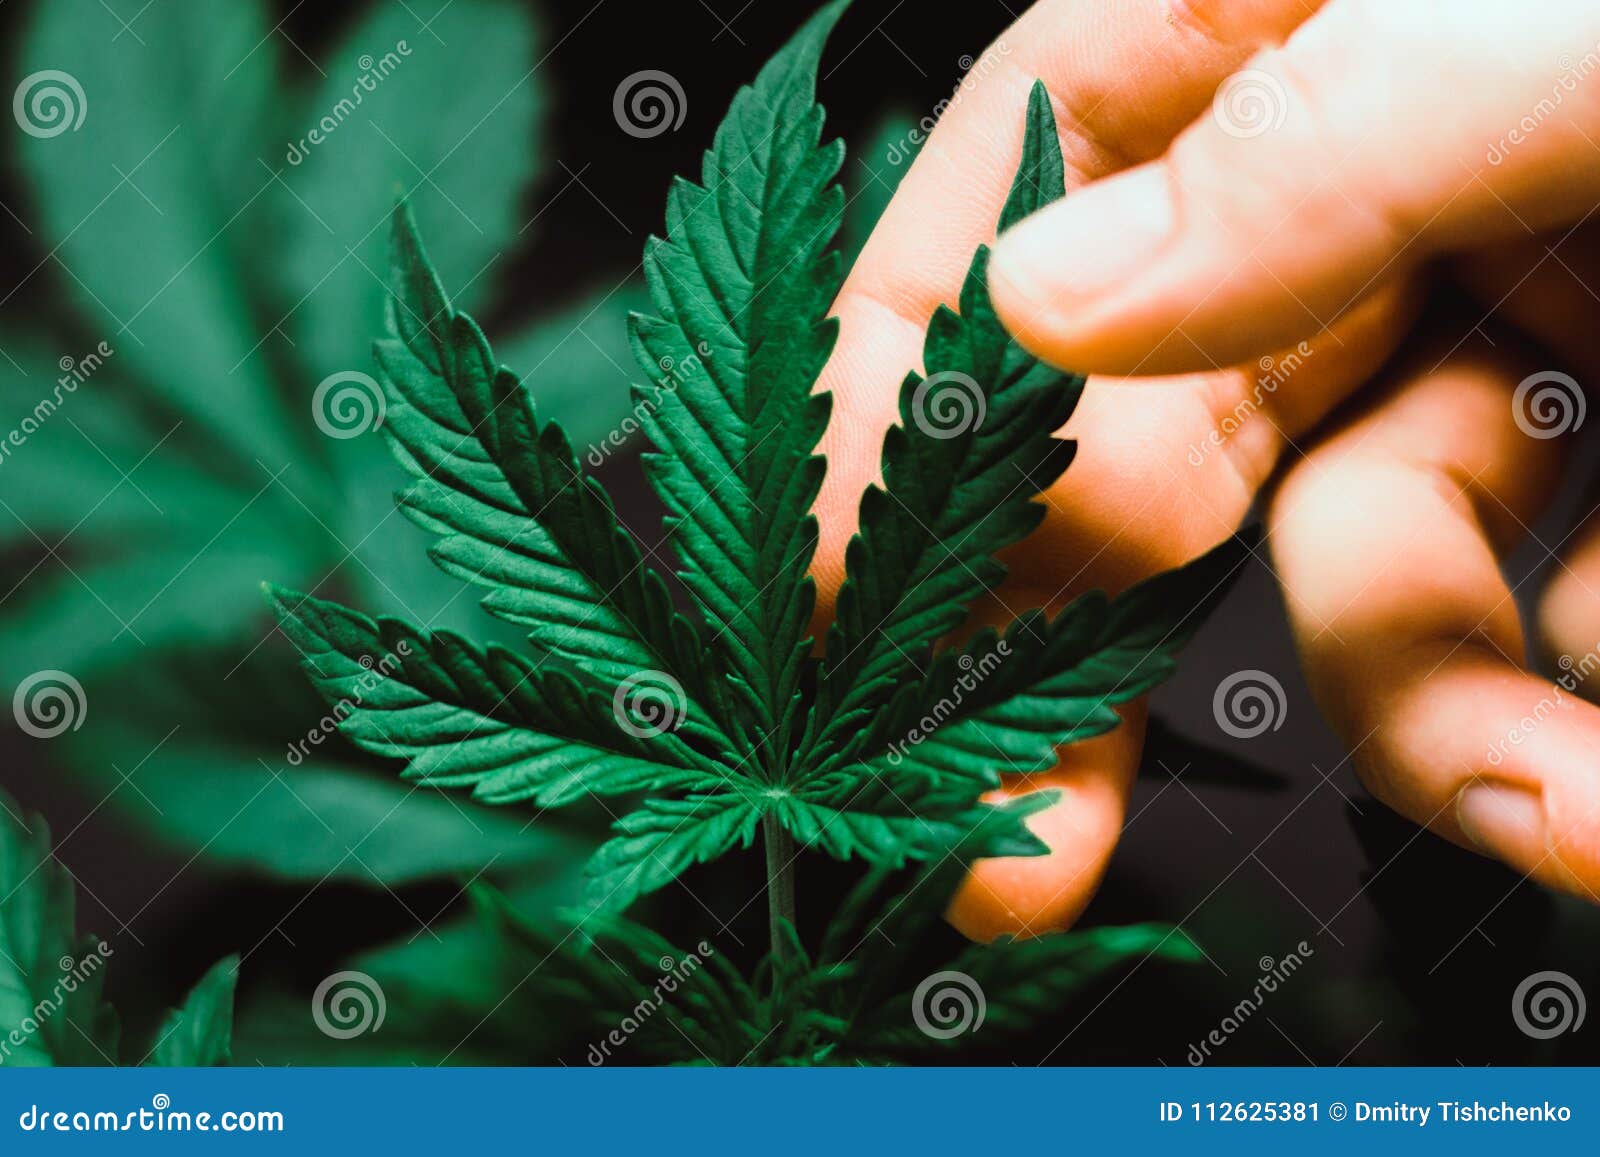 Марихуану красивые картинки уход выращивание марихуаны